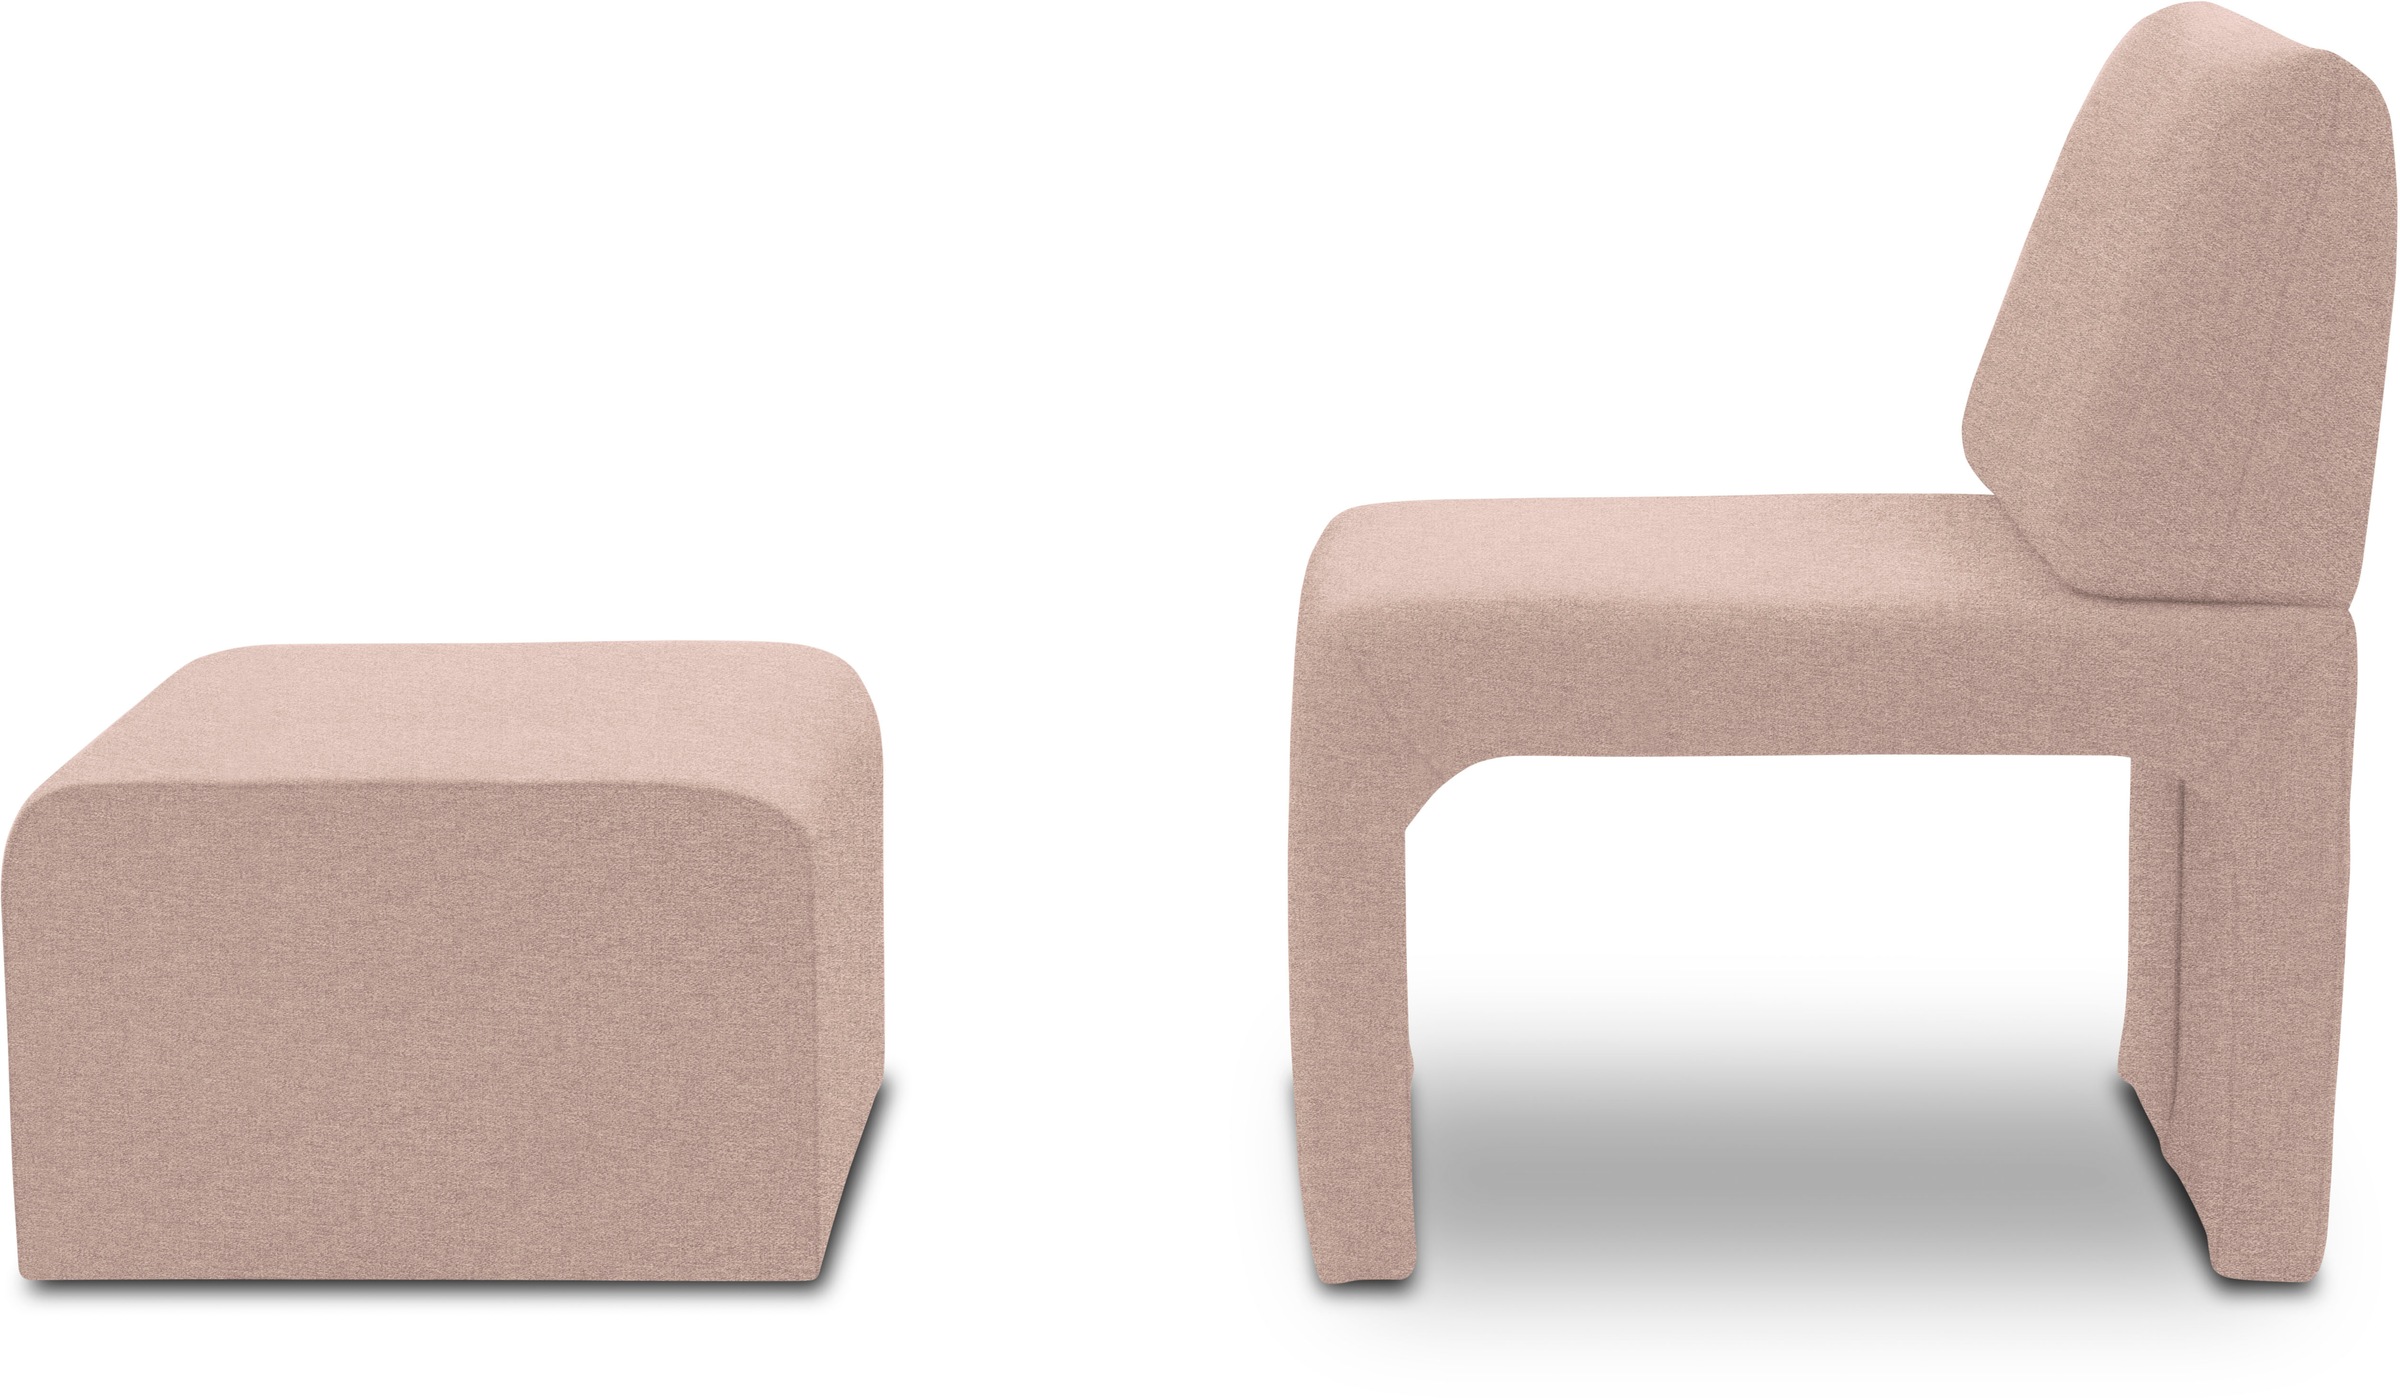 DOMO collection Sessel »700017 ideal für kleine Räume, platzsparend, trotzdem bequem«, Hocker unter dem Sessel verstaubar, lieferbar in nur 2 Wochen